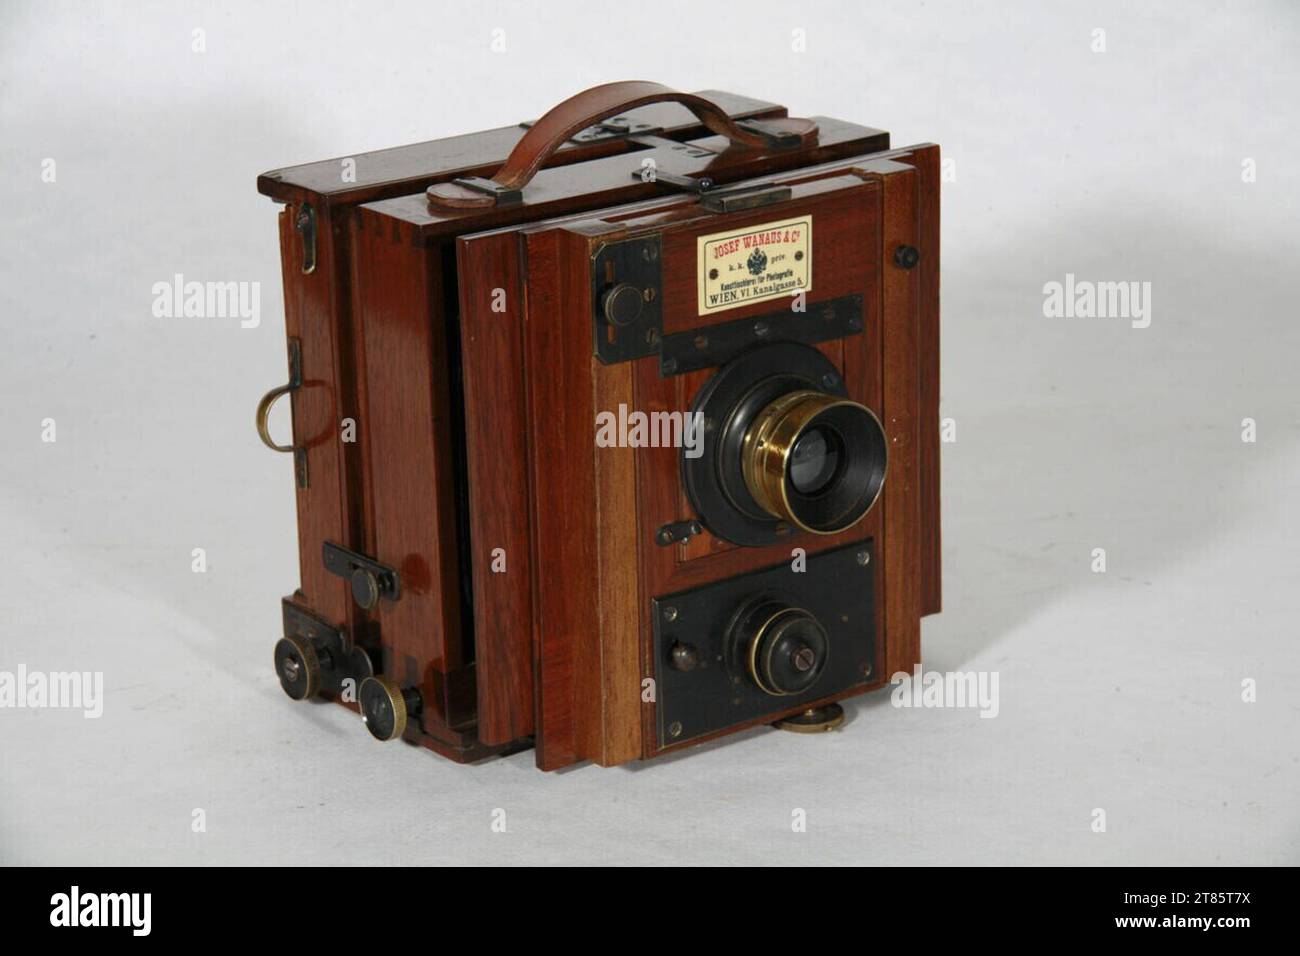 Josef Wanaus (Produzent_in) Box camera - 9 x 12 cm, obiettivo anastigmat Carl Zeiss N. 9662, 1: 7,2 f = 120 mm, D.R.P 56109 e miscele di iride (2, 4, 8, 26, 32, 64, 128, 192), piastra per lenti con chiusura a ghigliottina incorporata 0-5. Pelle di legno 1880 - 1900 , 1880/1900 Foto Stock